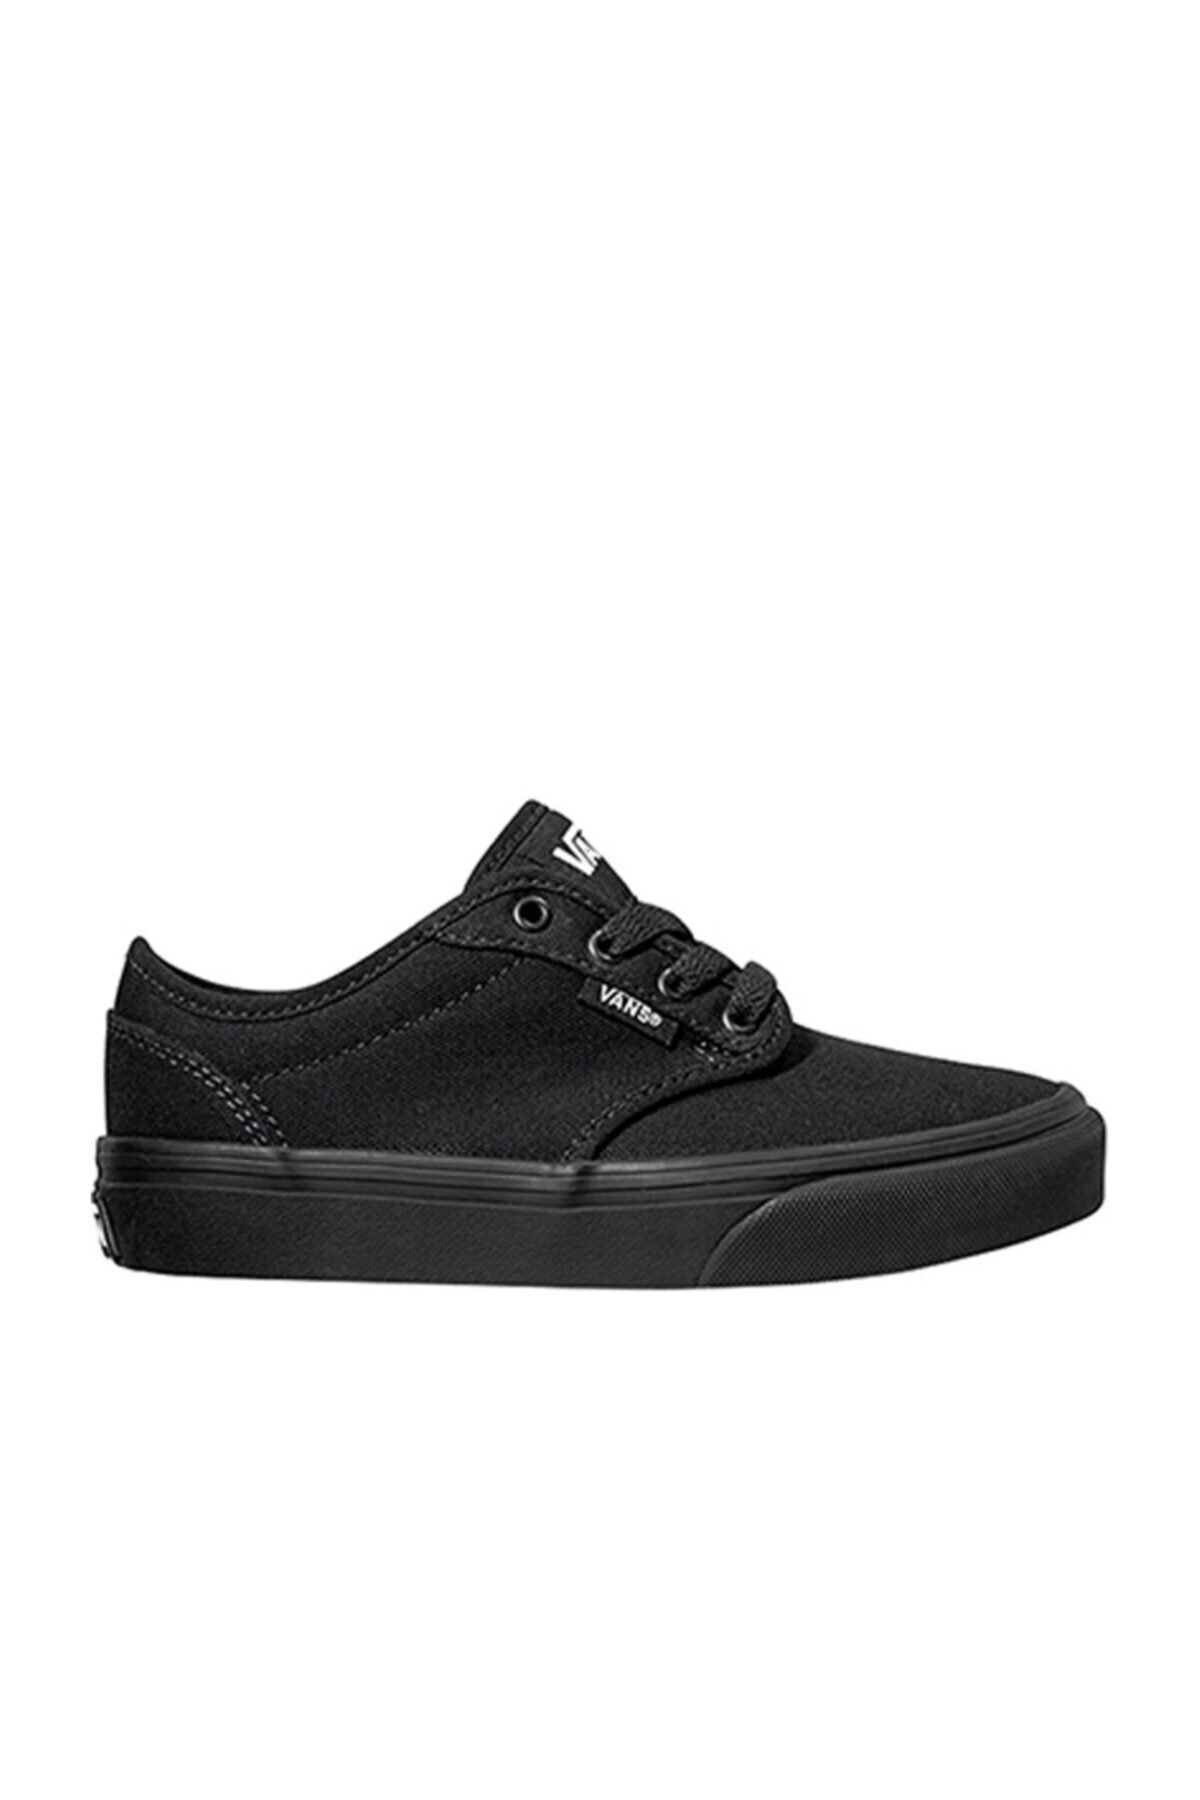 Vans Atwood Siyah Kadın Sneaker Ayakkabı Fiyatı, Yorumları - Trendyol